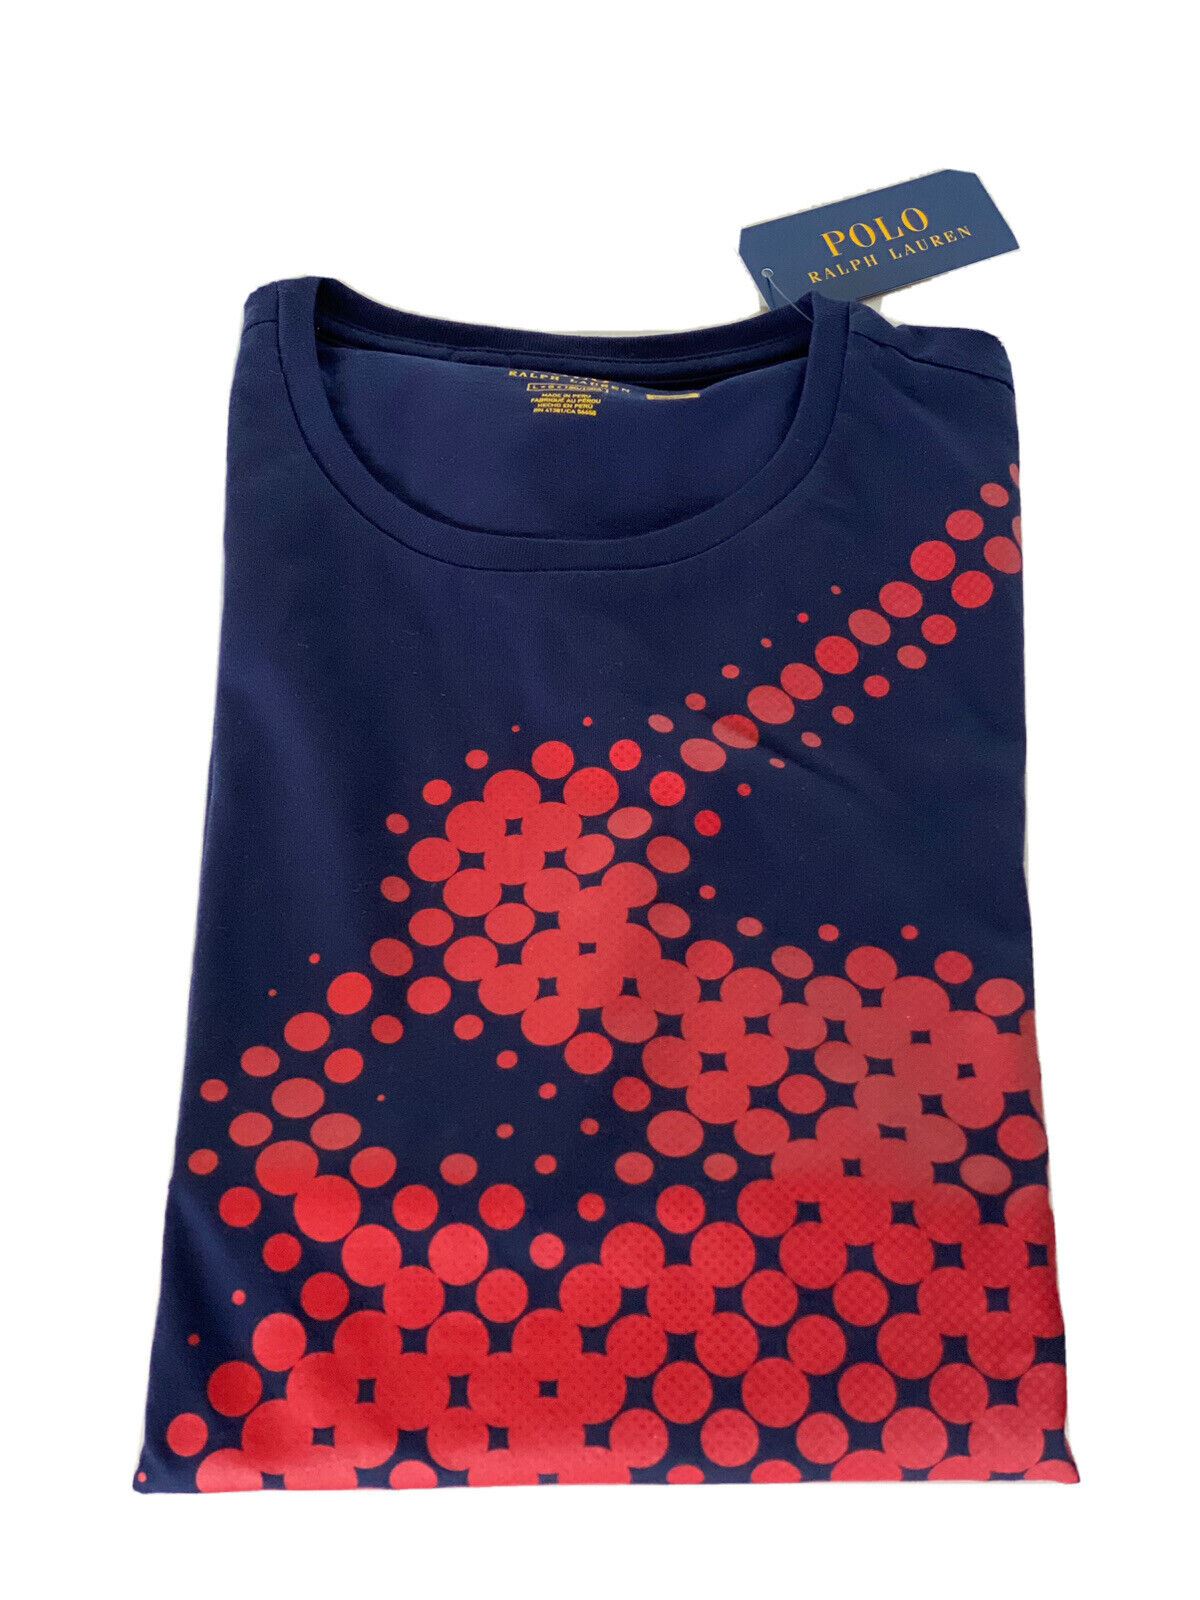 Синяя большая футболка с короткими рукавами и логотипом Polo Ralph Lauren, NWT 65 долларов США 